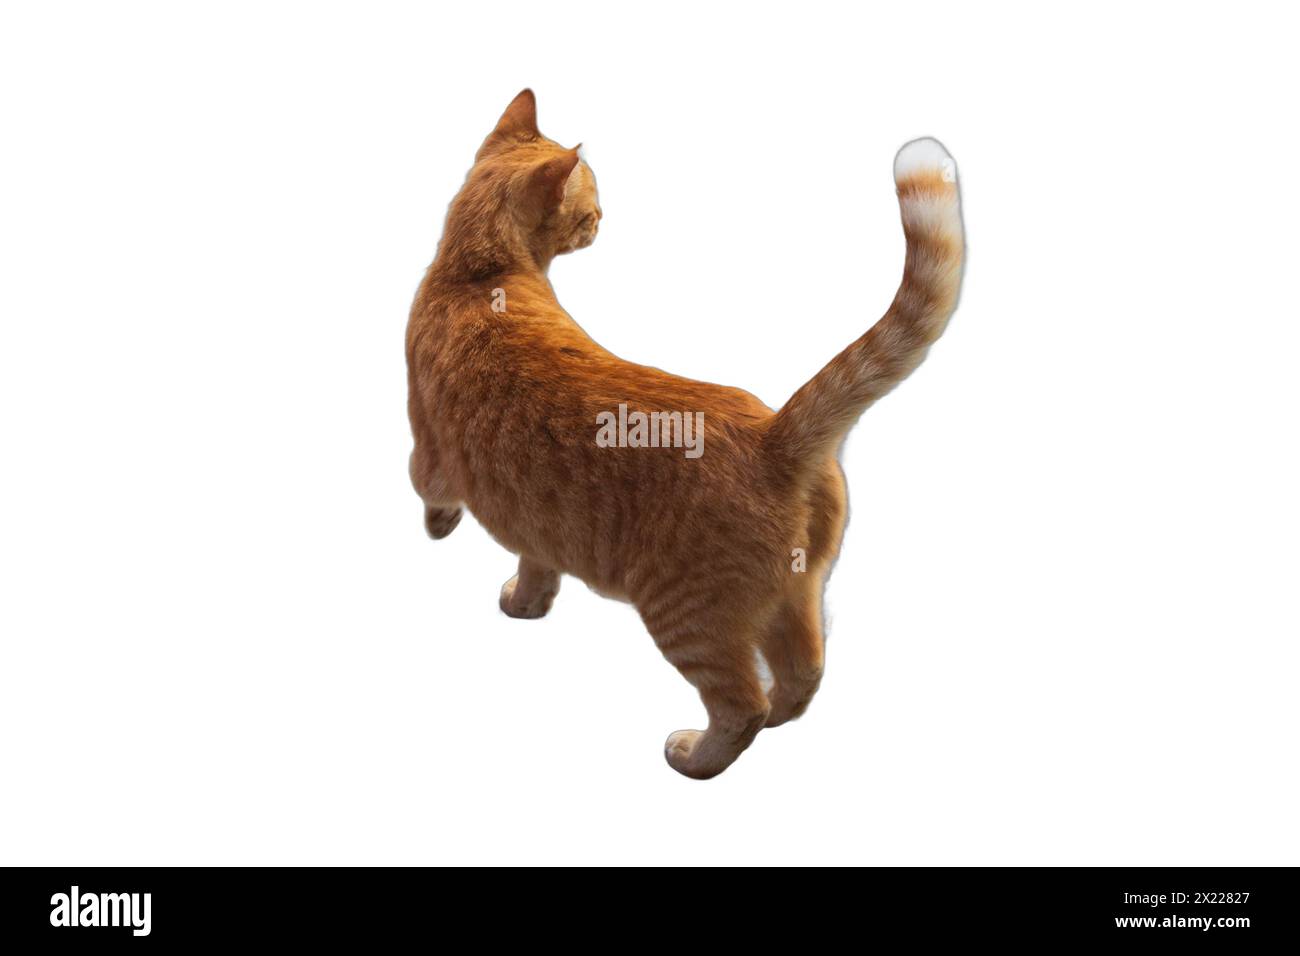 Immagini isolate di gatti attenti in piedi in posizione verticale. Perfetto per disegni incentrati sugli animali domestici, illustrazioni a tema animale e composizioni giocose Foto Stock